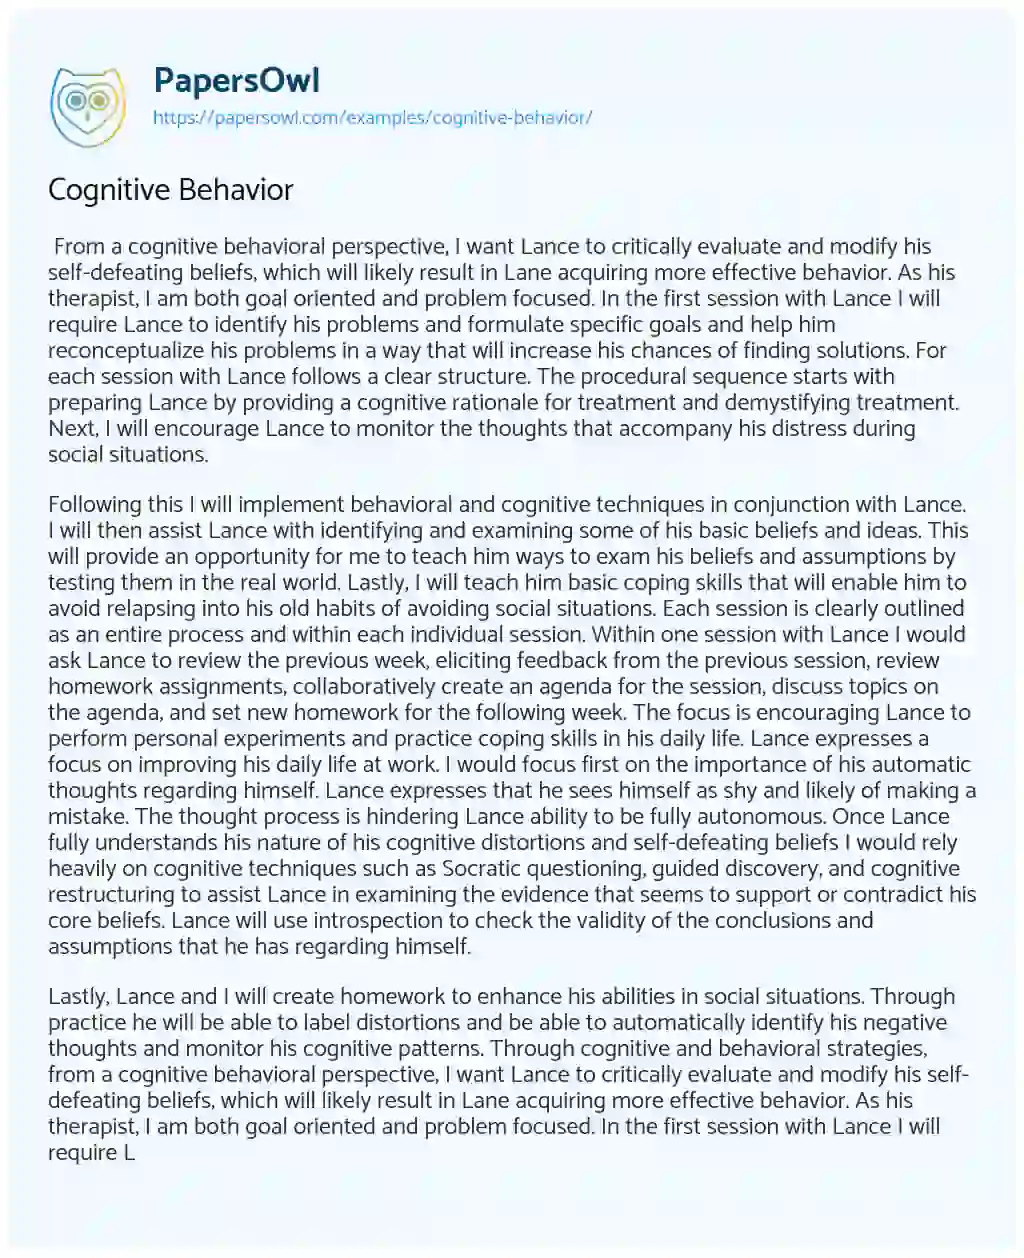 Essay on Cognitive Behavior